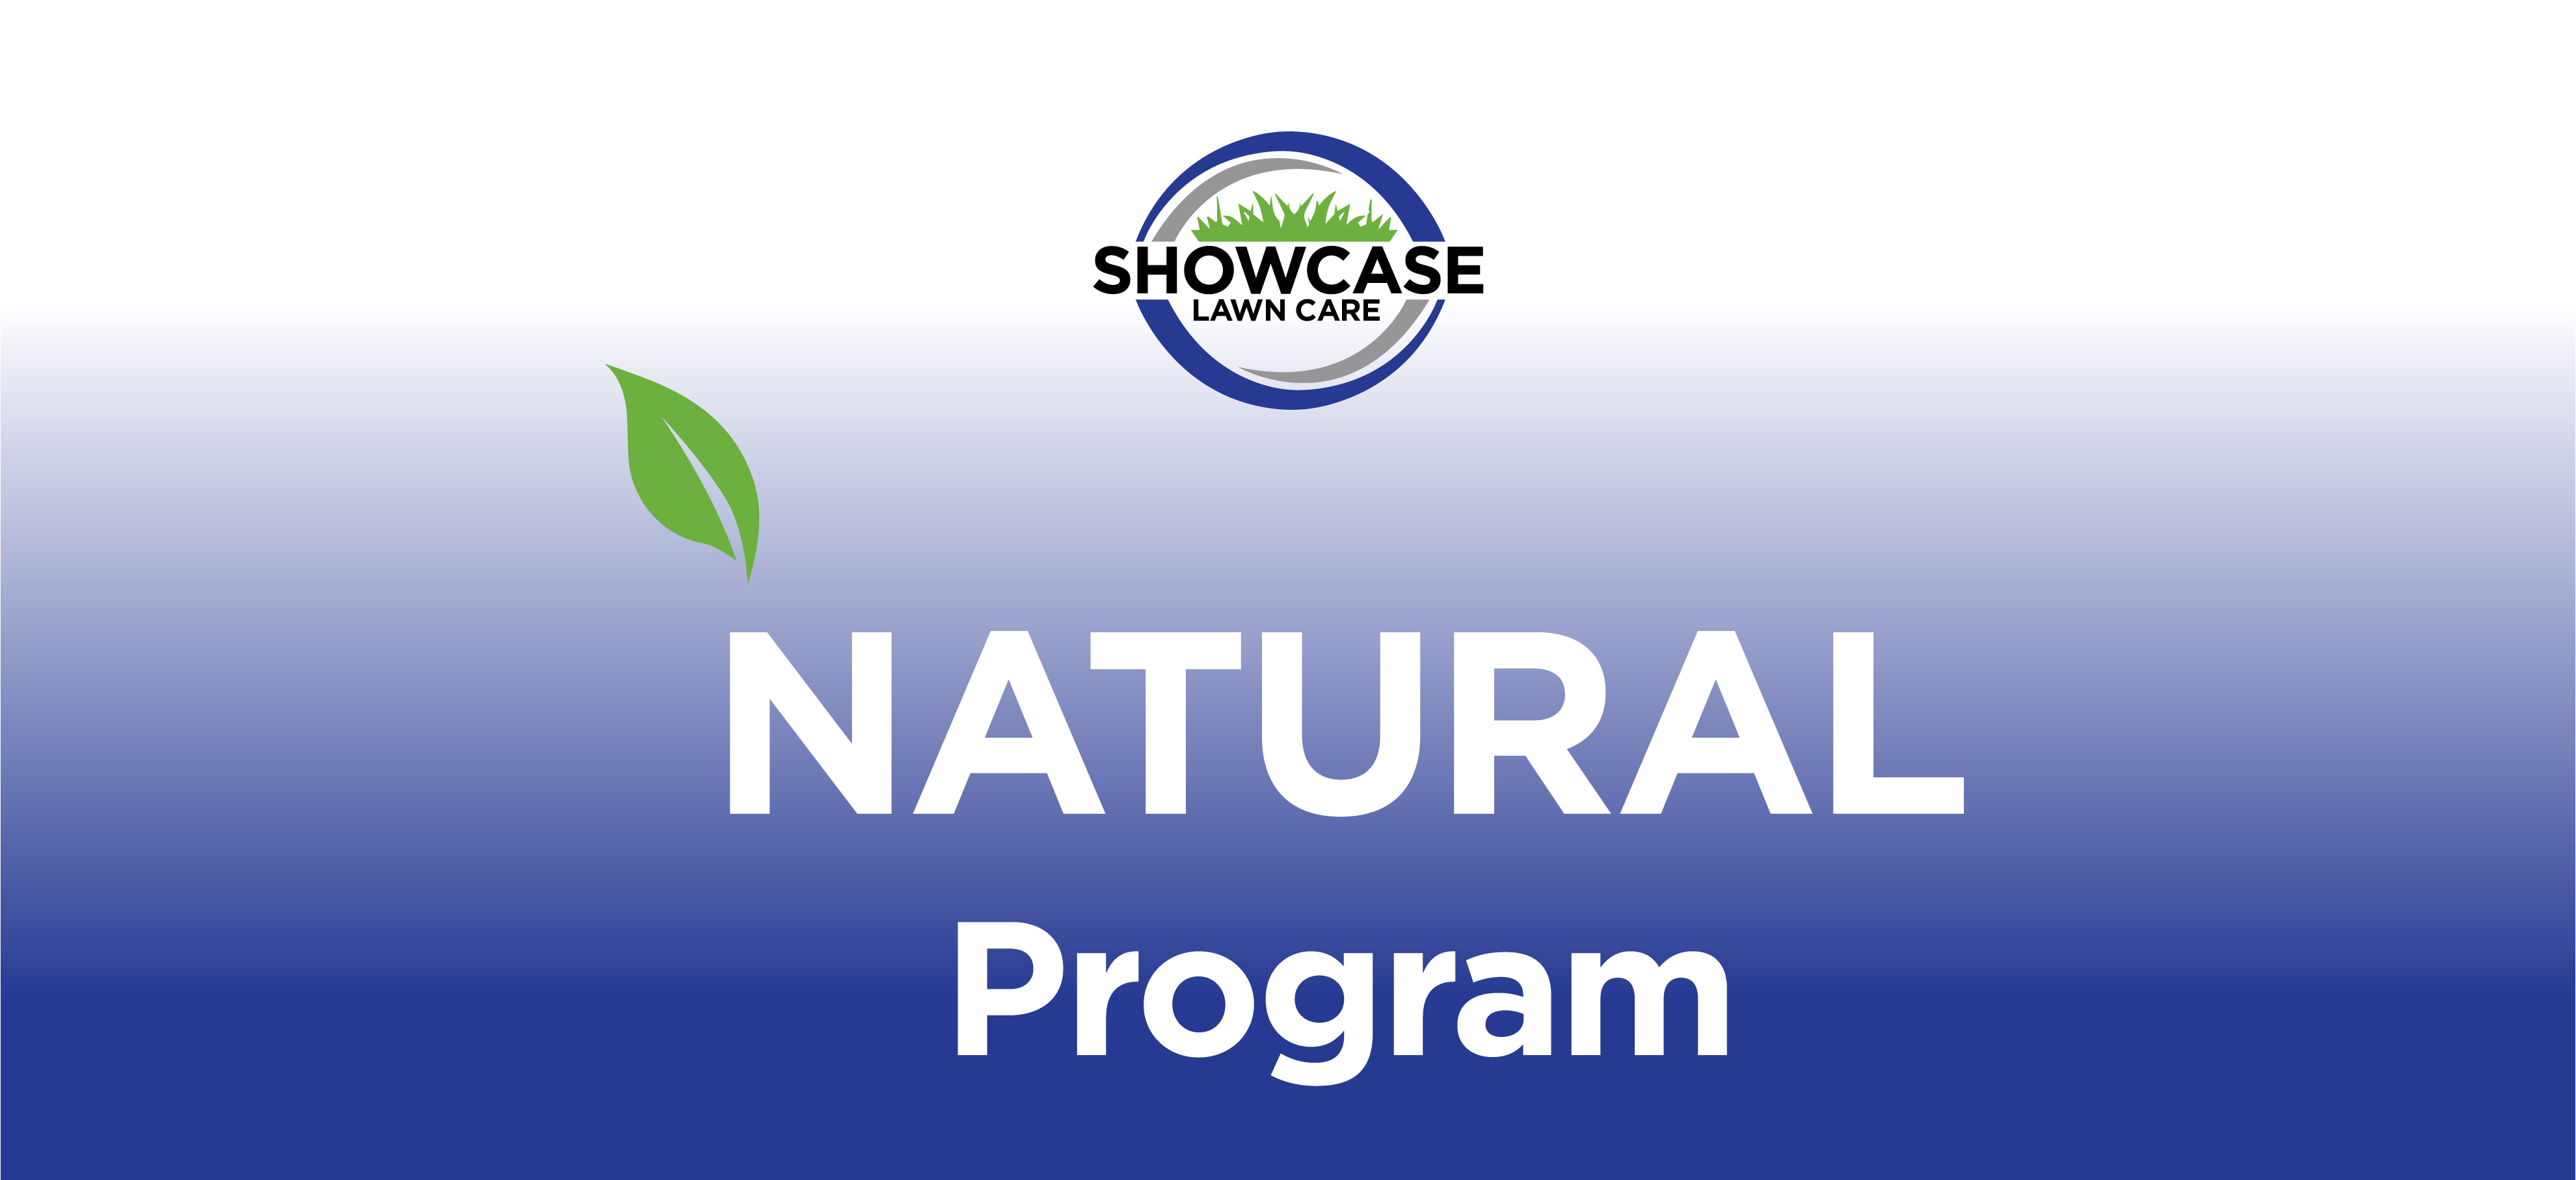 natural program showcase